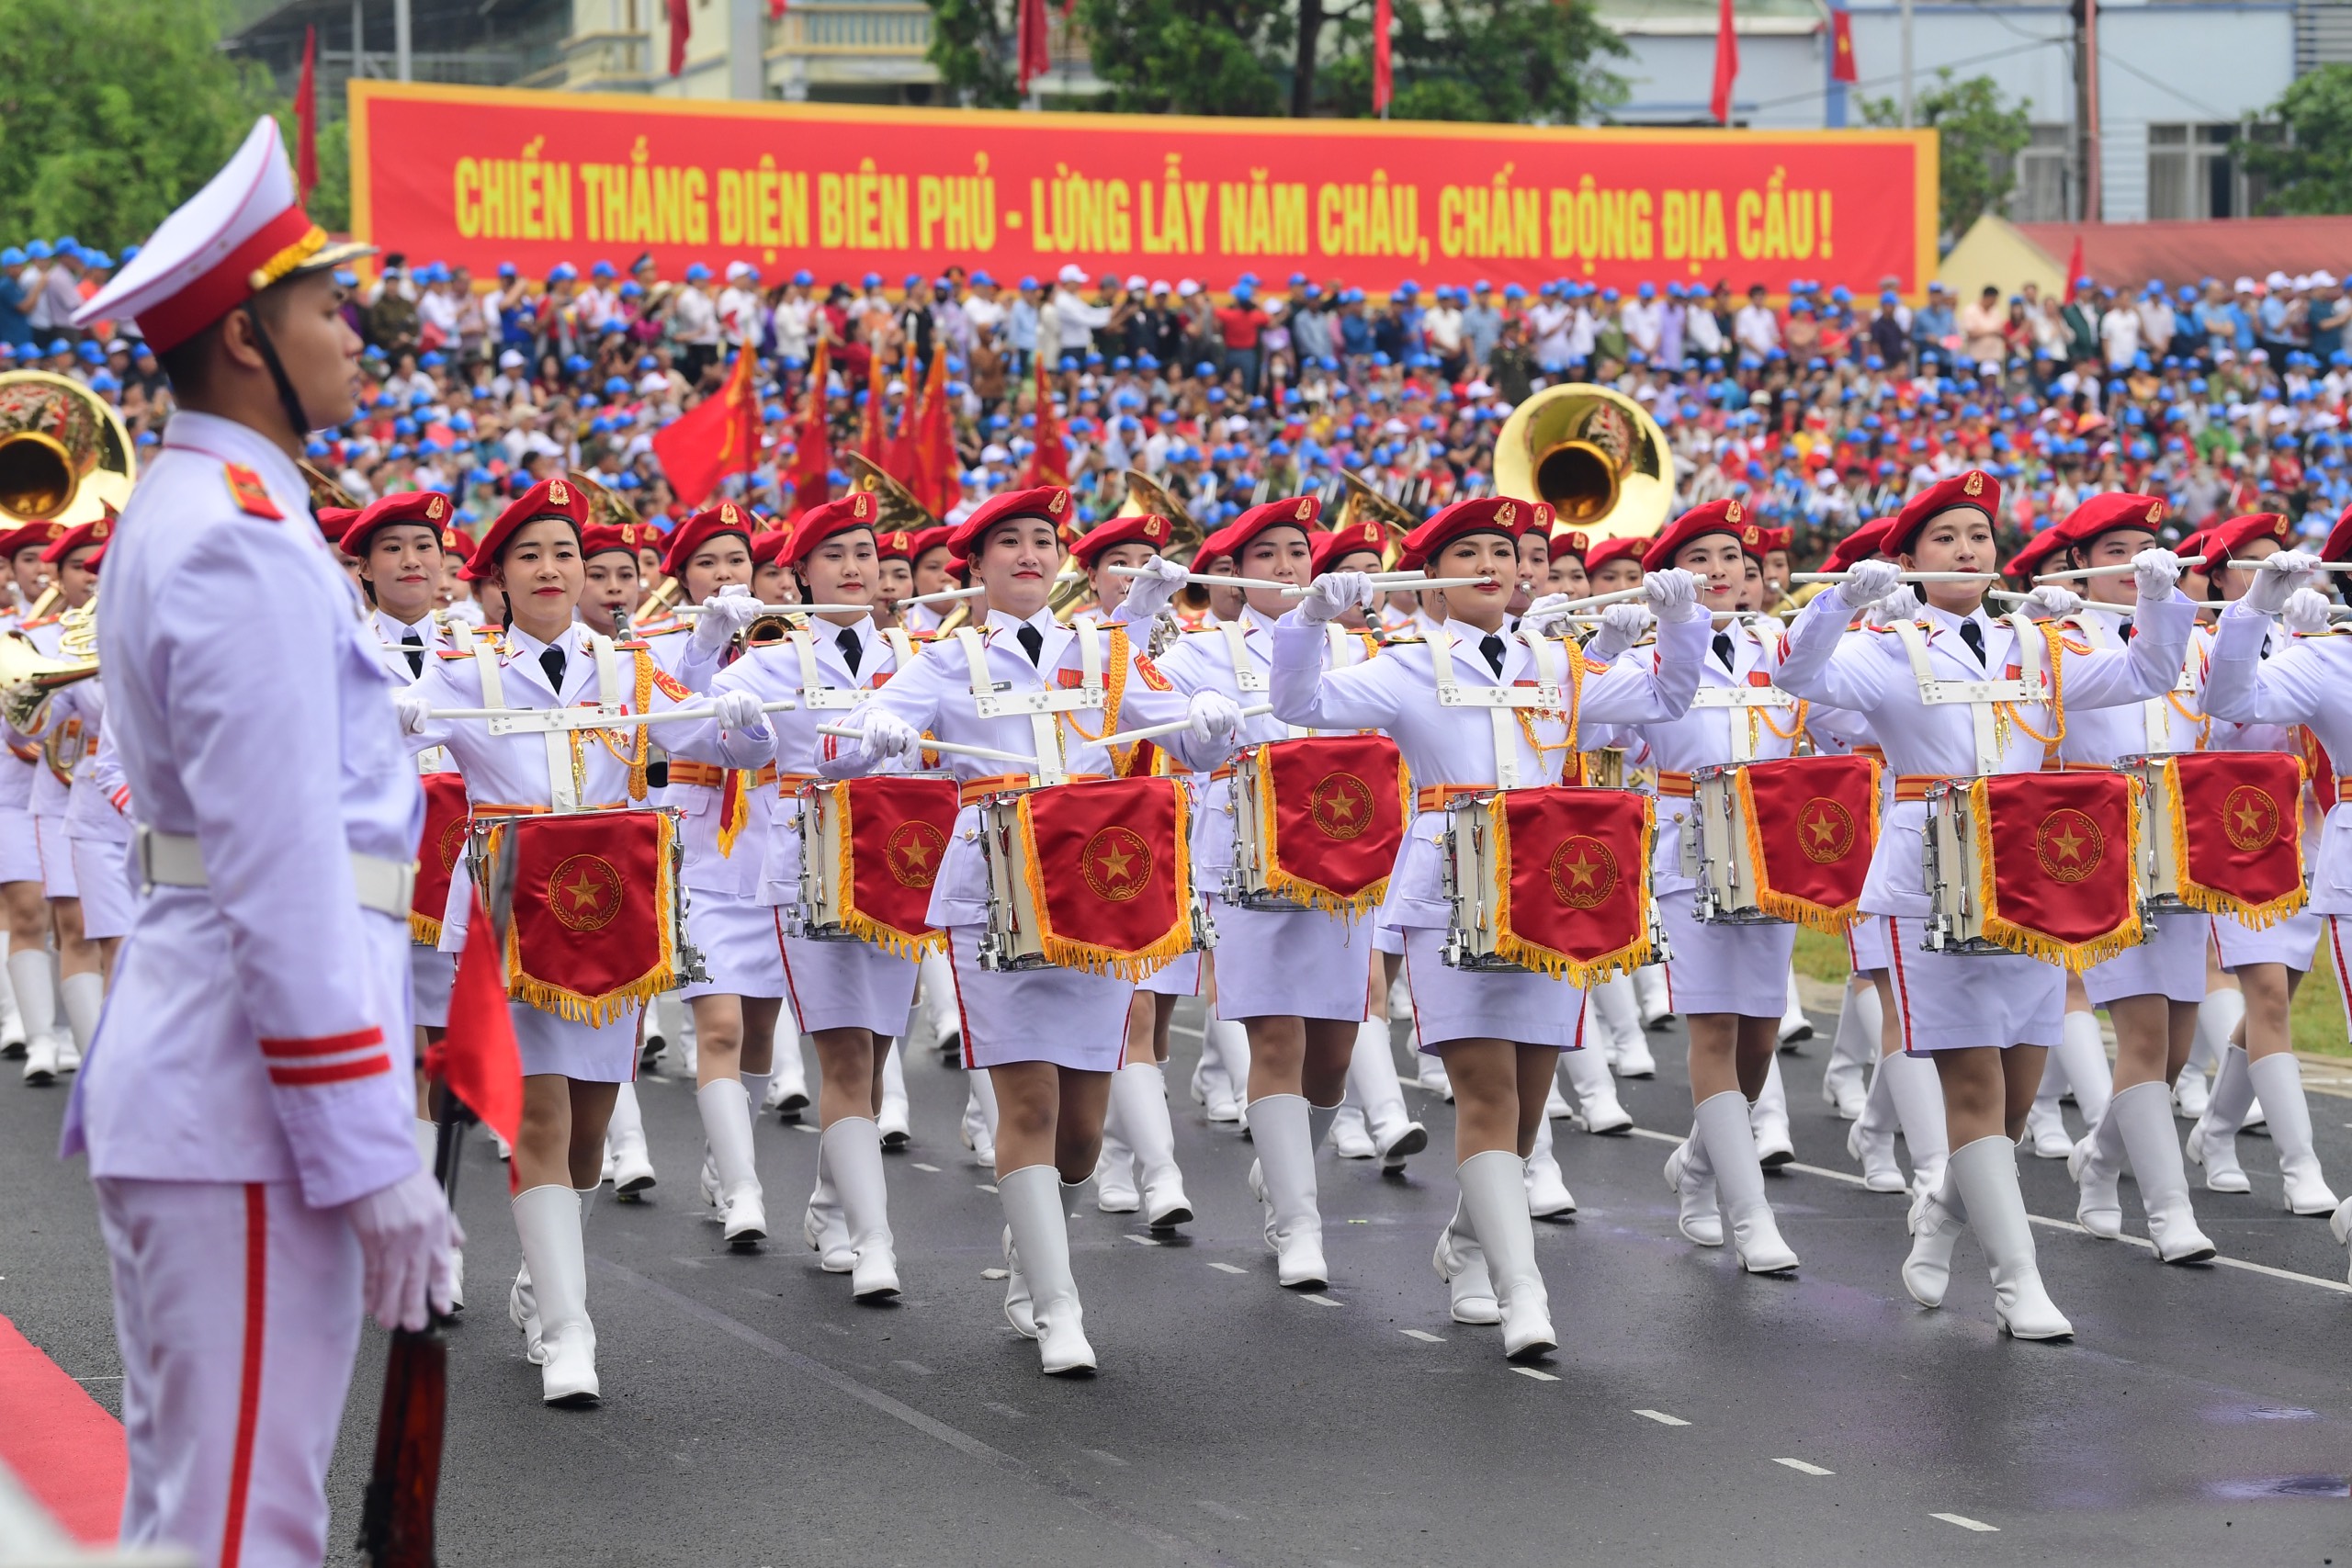 Lễ diễu binh oai hùng và đầy tự hào của 12.000 người - những hình ảnh đi vào lịch sử ở Điện Biên Phủ- Ảnh 20.